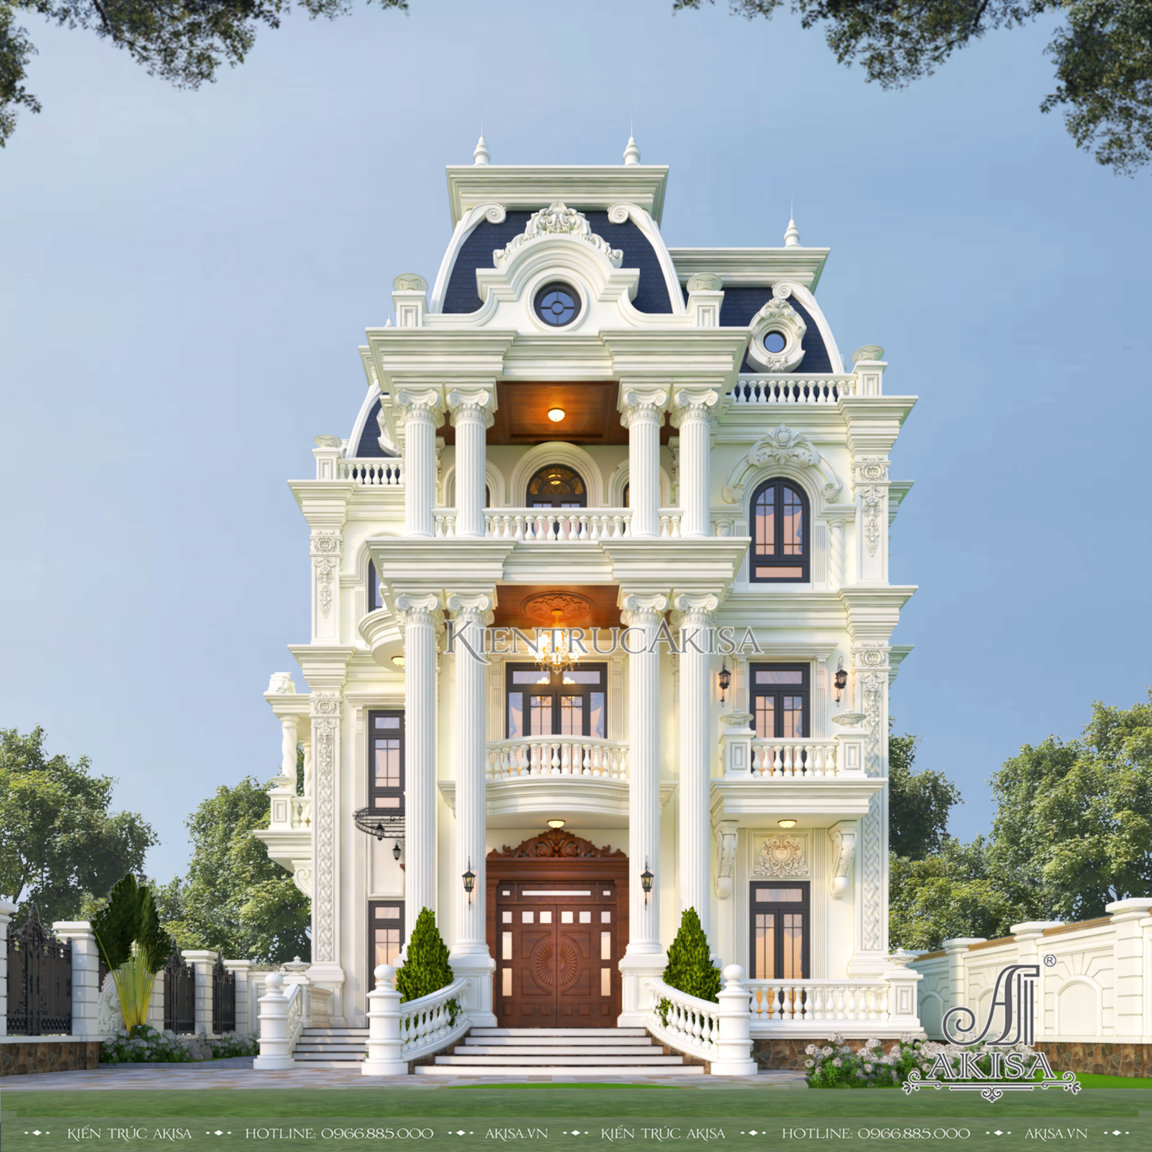 Thiết kế biệt thự 3 tầng phong cách cổ điển đẹp đẳng cấp tại An Giang